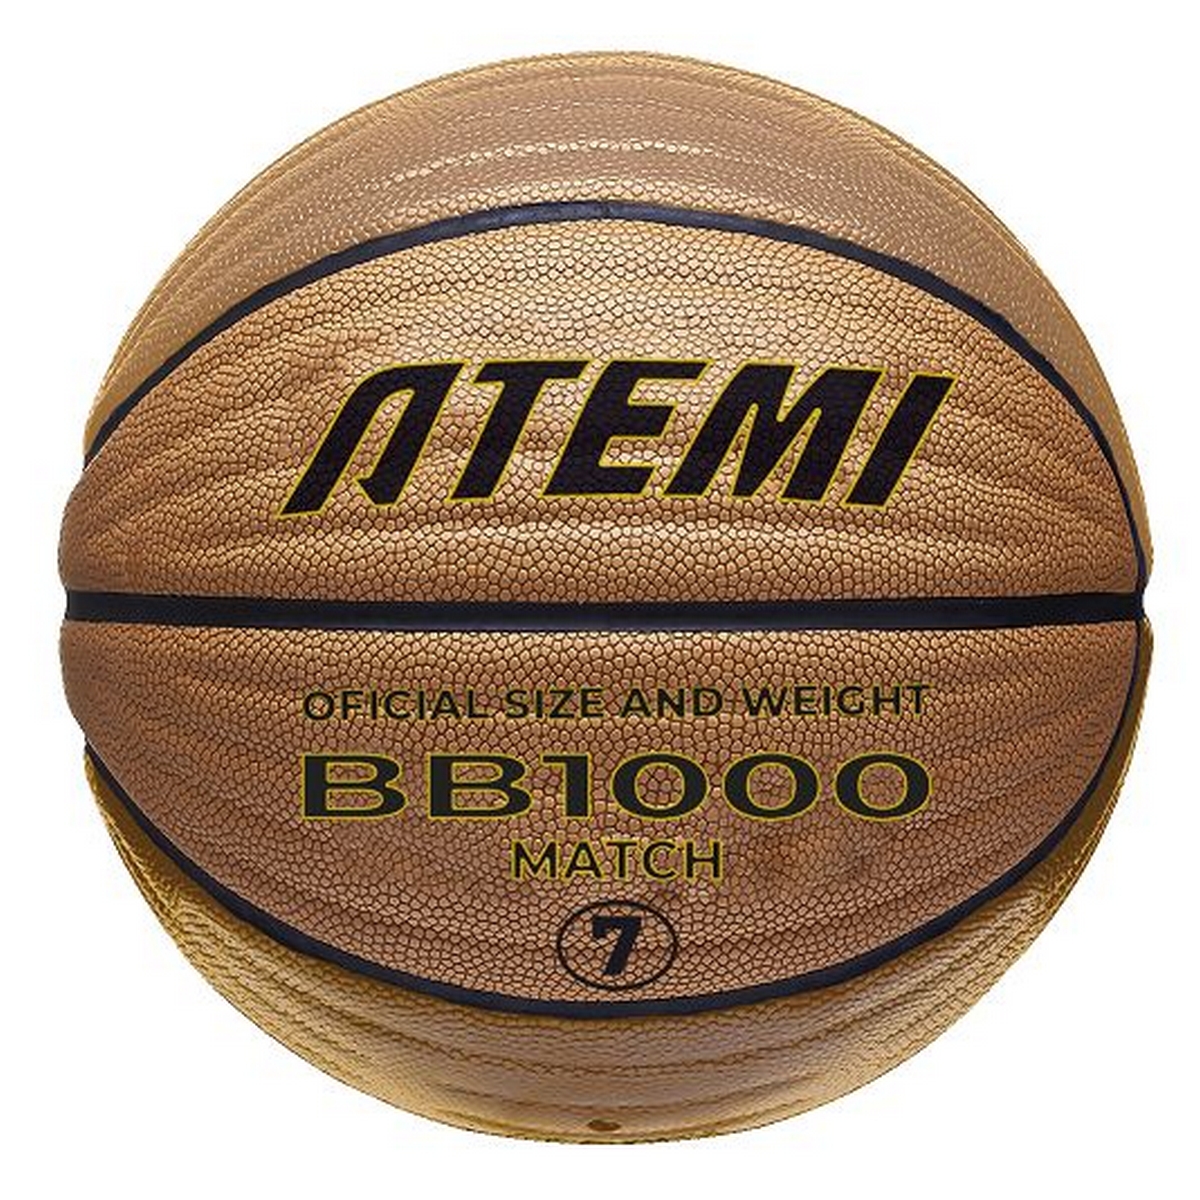 Мяч баскетбольный Atemi BB1000N р.7, окруж 75-78